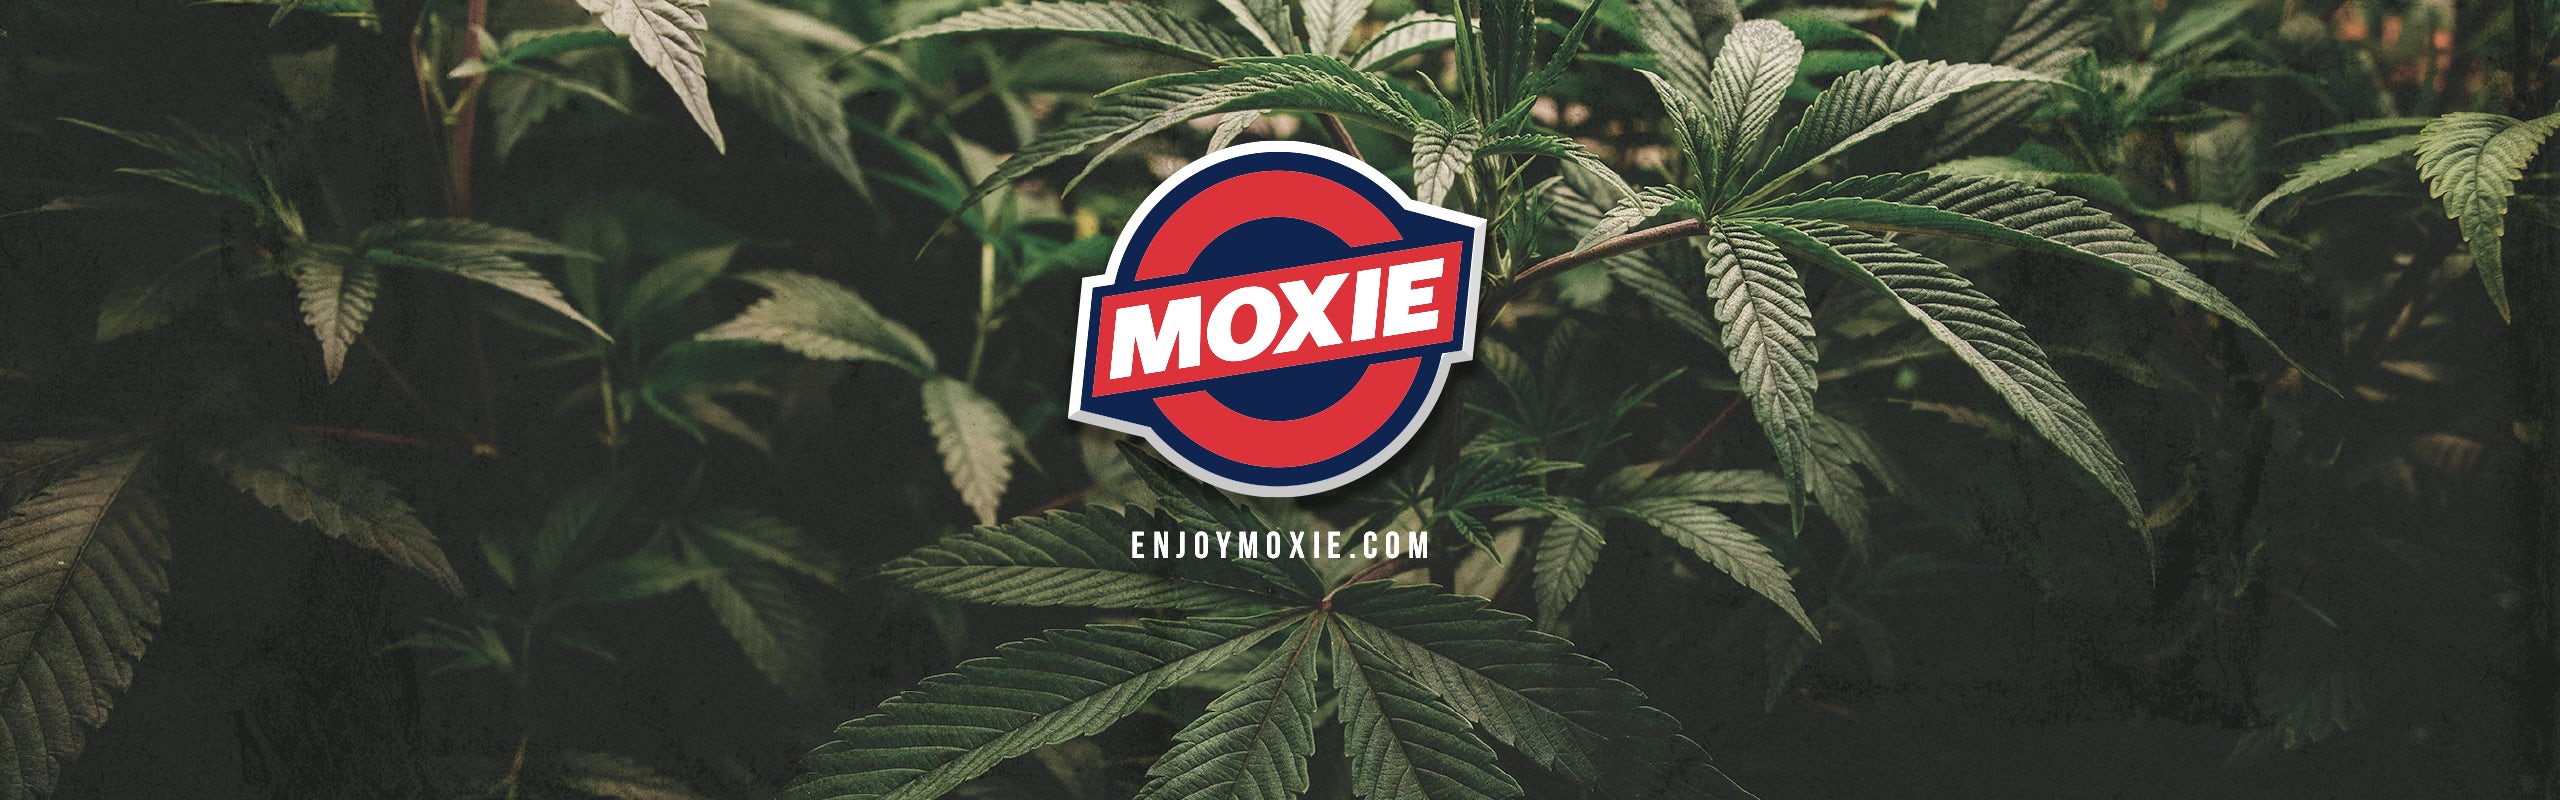 MOXIE banner